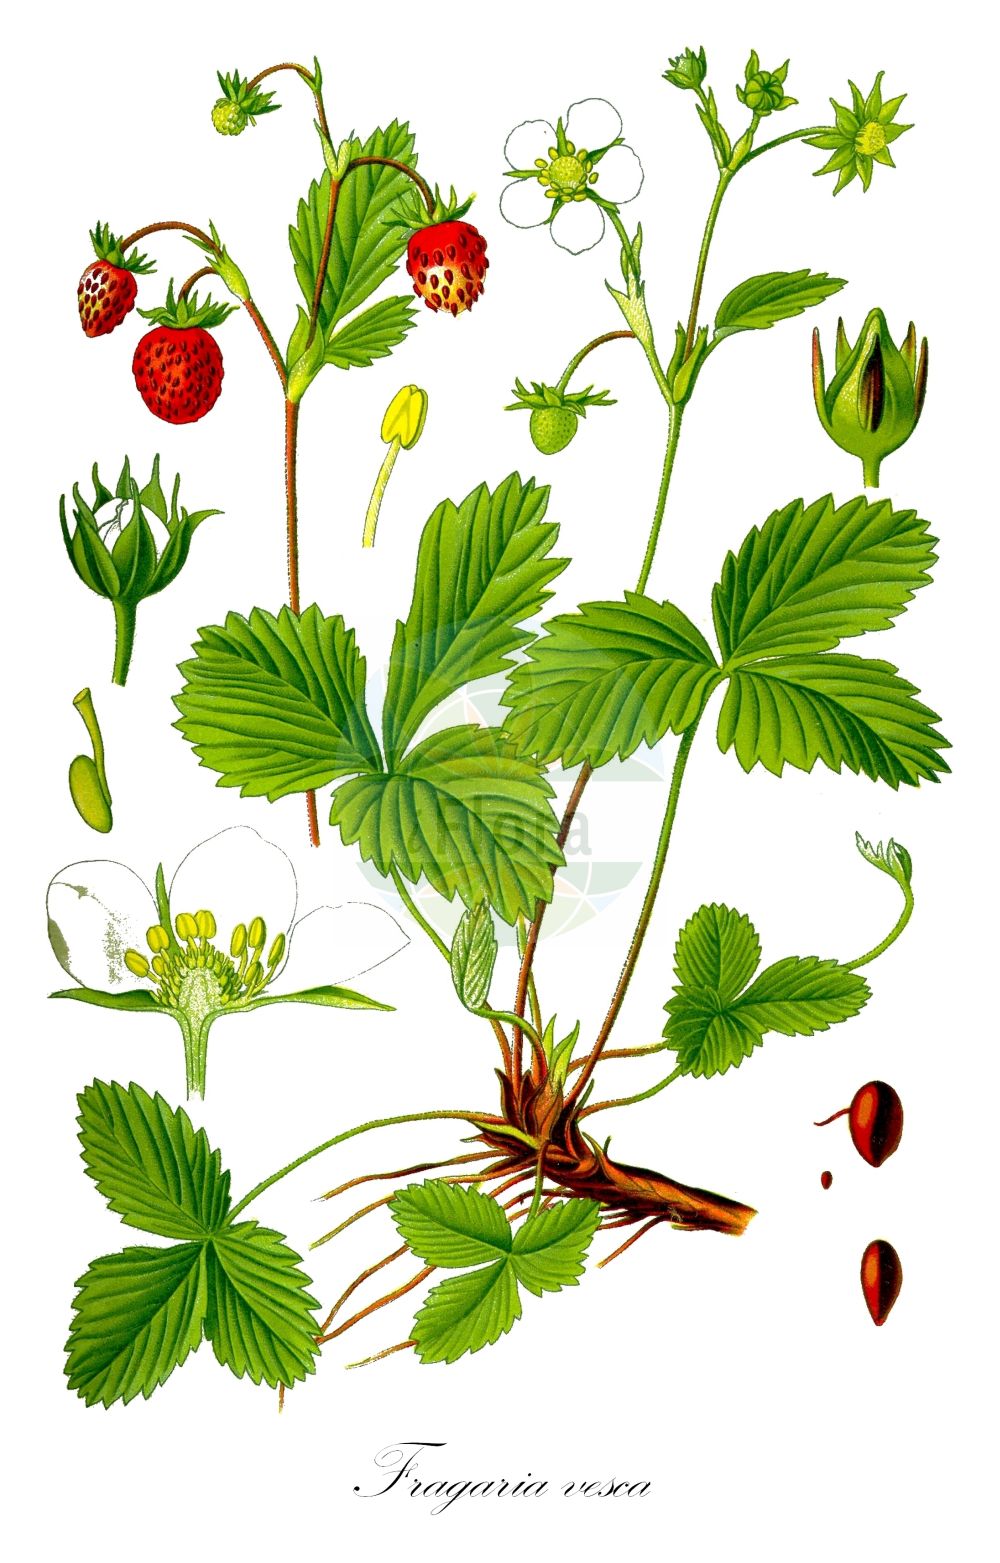 Historische Abbildung von Fragaria vesca (Wald-Erdbeere - Wild Strawberry). ---- Historical Drawing of Fragaria vesca (Wald-Erdbeere - Wild Strawberry).(Fragaria vesca,Wald-Erdbeere,Wild Strawberry,Dactylophyllum fragaria,Fragaria abnormis,Fragaria aliena,Fragaria alpina,Fragaria botryformis,Fragaria bractetata,Fragaria eflagellis,Fragaria florentina,Fragaria helleri,Fragaria hortensis,Fragaria minor,Fragaria monophylla,Fragaria multiplex,Fragaria muricata,Fragaria nemoralis,Fragaria nuda,Fragaria portentosa,Fragaria roseiflora,Fragaria semperflorens,Fragaria succulenta,Fragaria sylvestris,Fragaria unifolia,Fragaria vesca,Fragaria vulgaris,Potentilla vesca,Wald-Erdbeere,Scharlach-Erdbeere,Wild Strawberry,European Strawberry,Woodland Strawberry,Virginia Strawberry,Fragaria,Erdbeere,Strawberry,Rosaceae,Rosengewächse,Rose family,Thomé (1885))